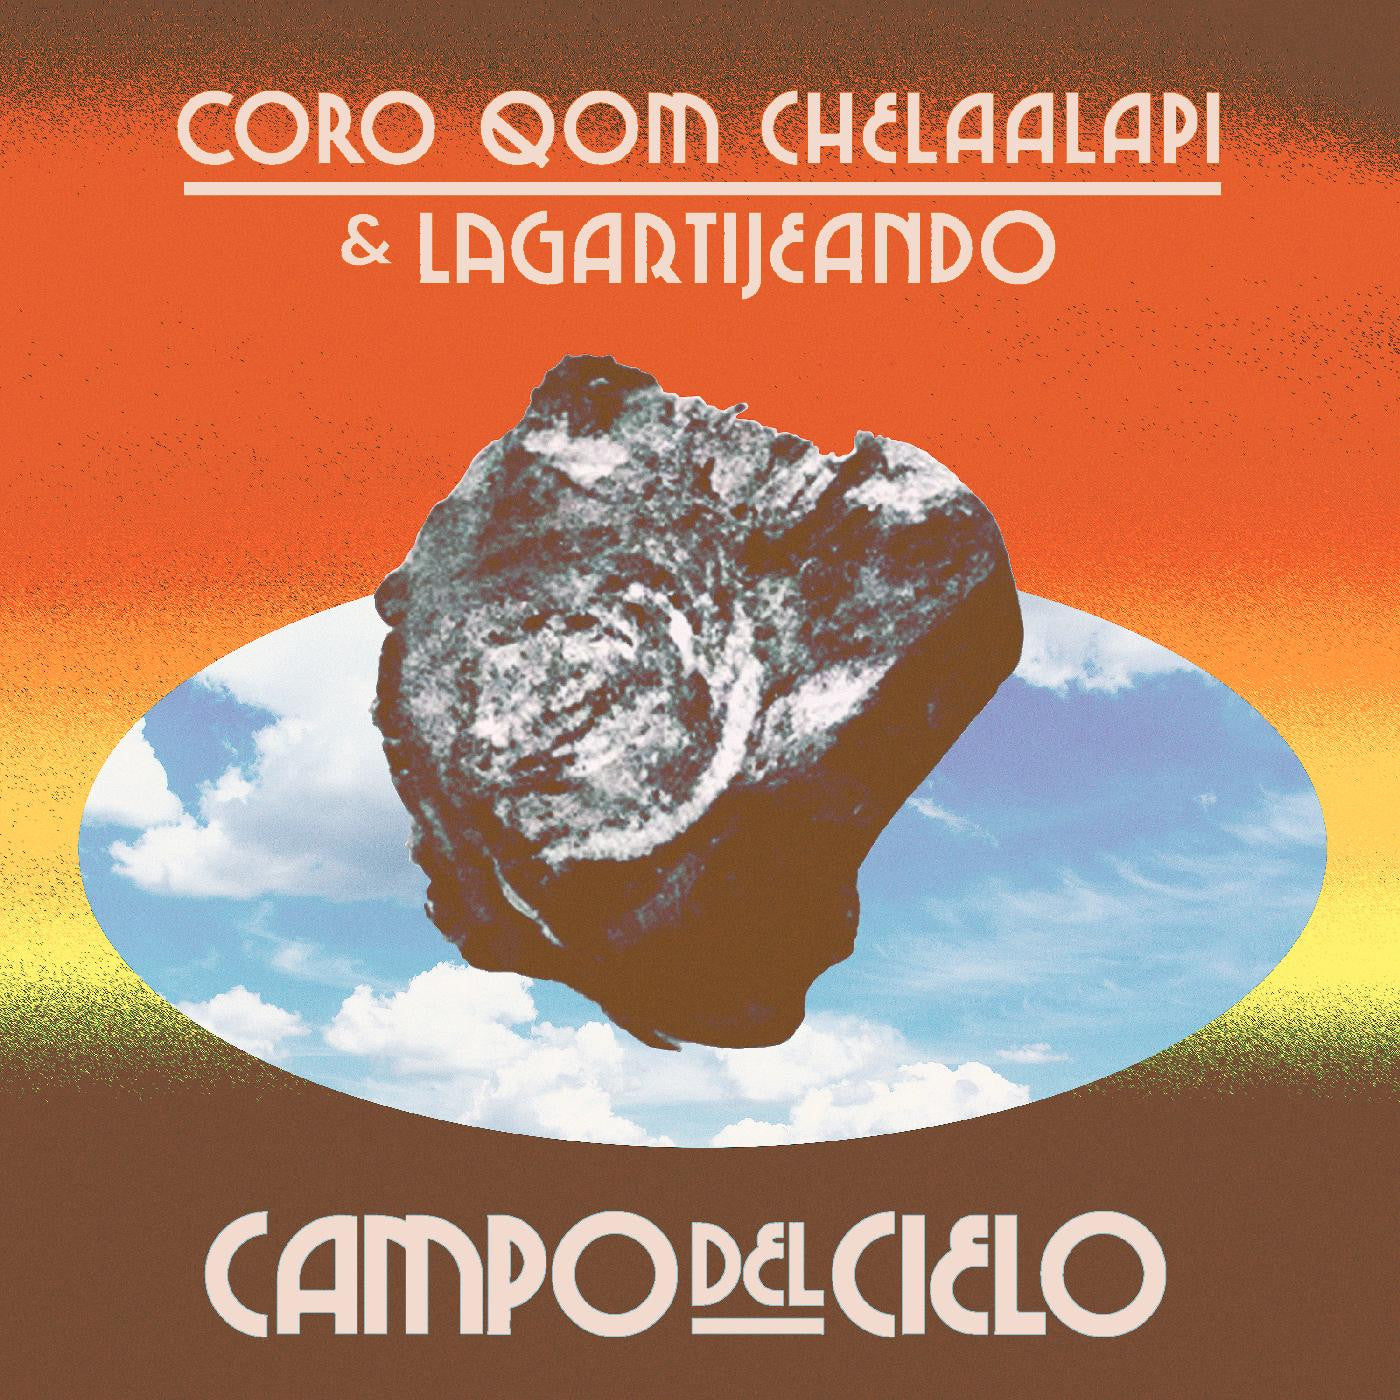 Coro Qom Chelaalapí & Lagartijeando - Campo del Cielo